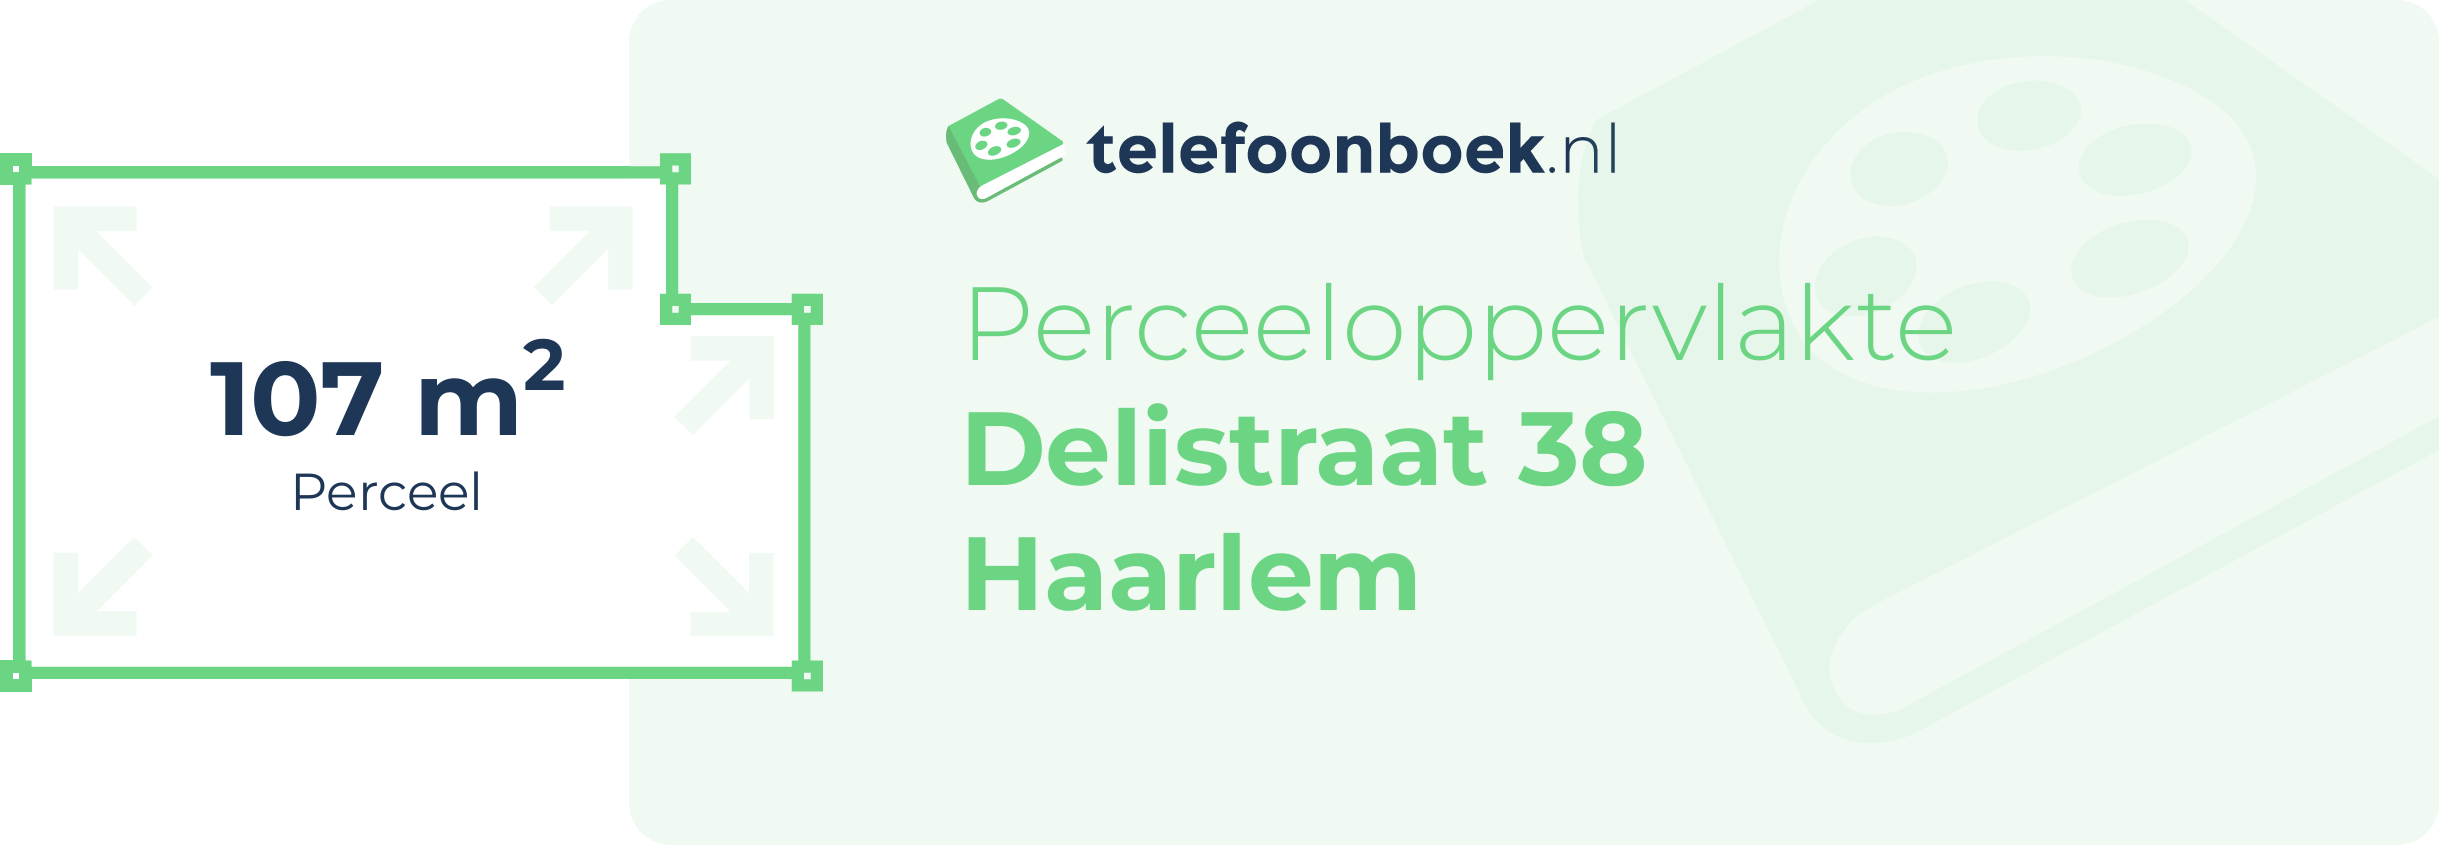 Perceeloppervlakte Delistraat 38 Haarlem